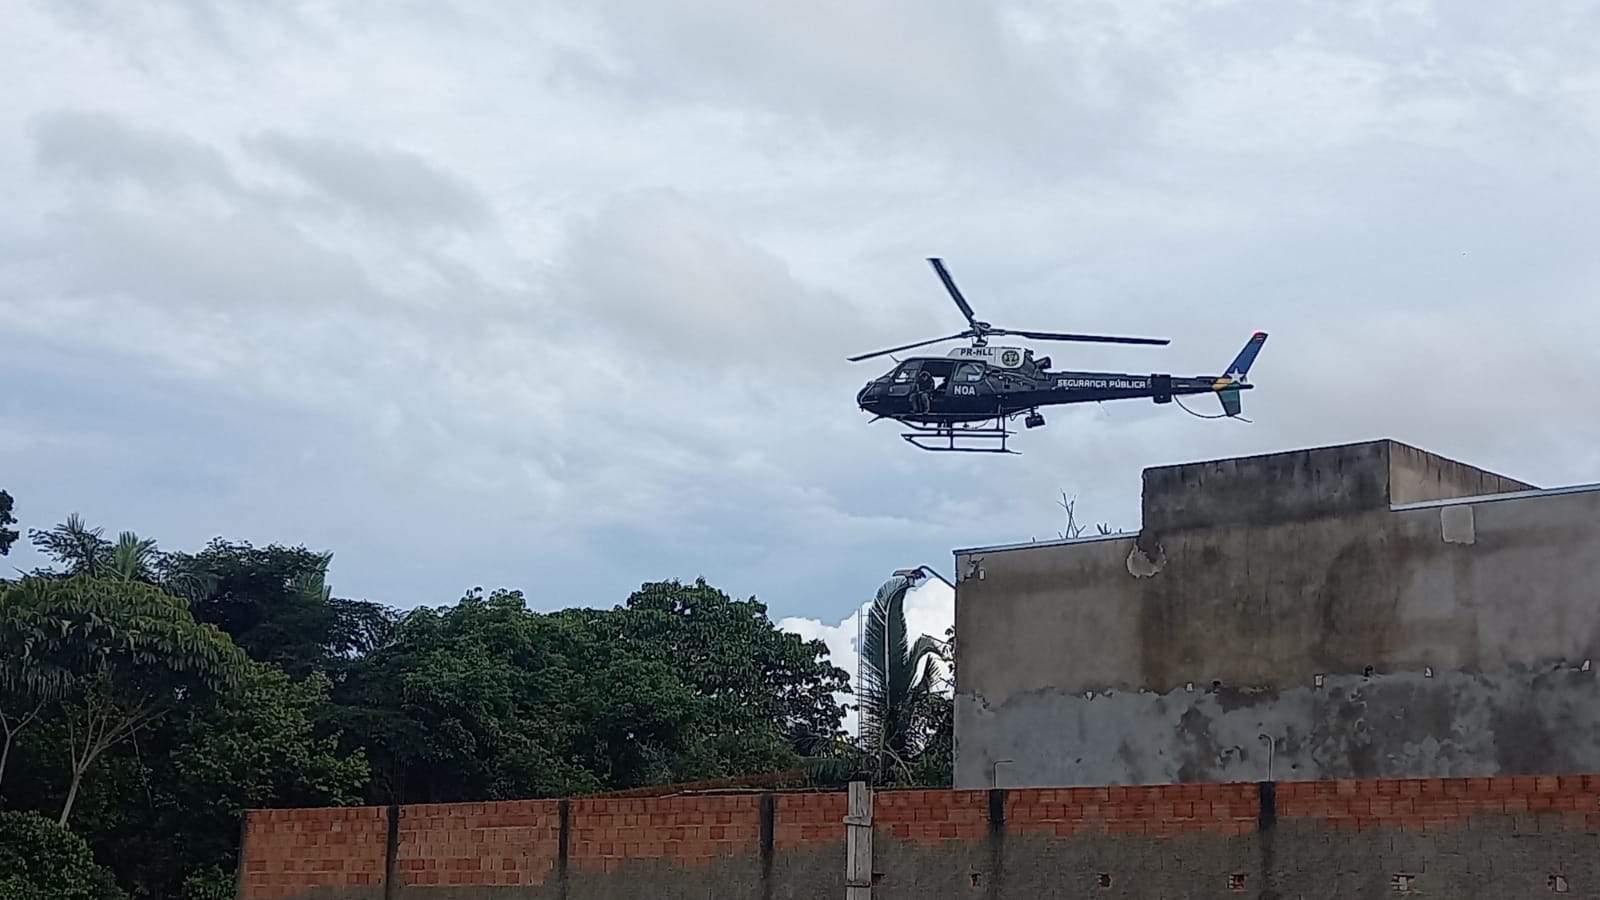 SUMIDOS: Crianças desaparecem em mata e polícia faz buscas com helicóptero